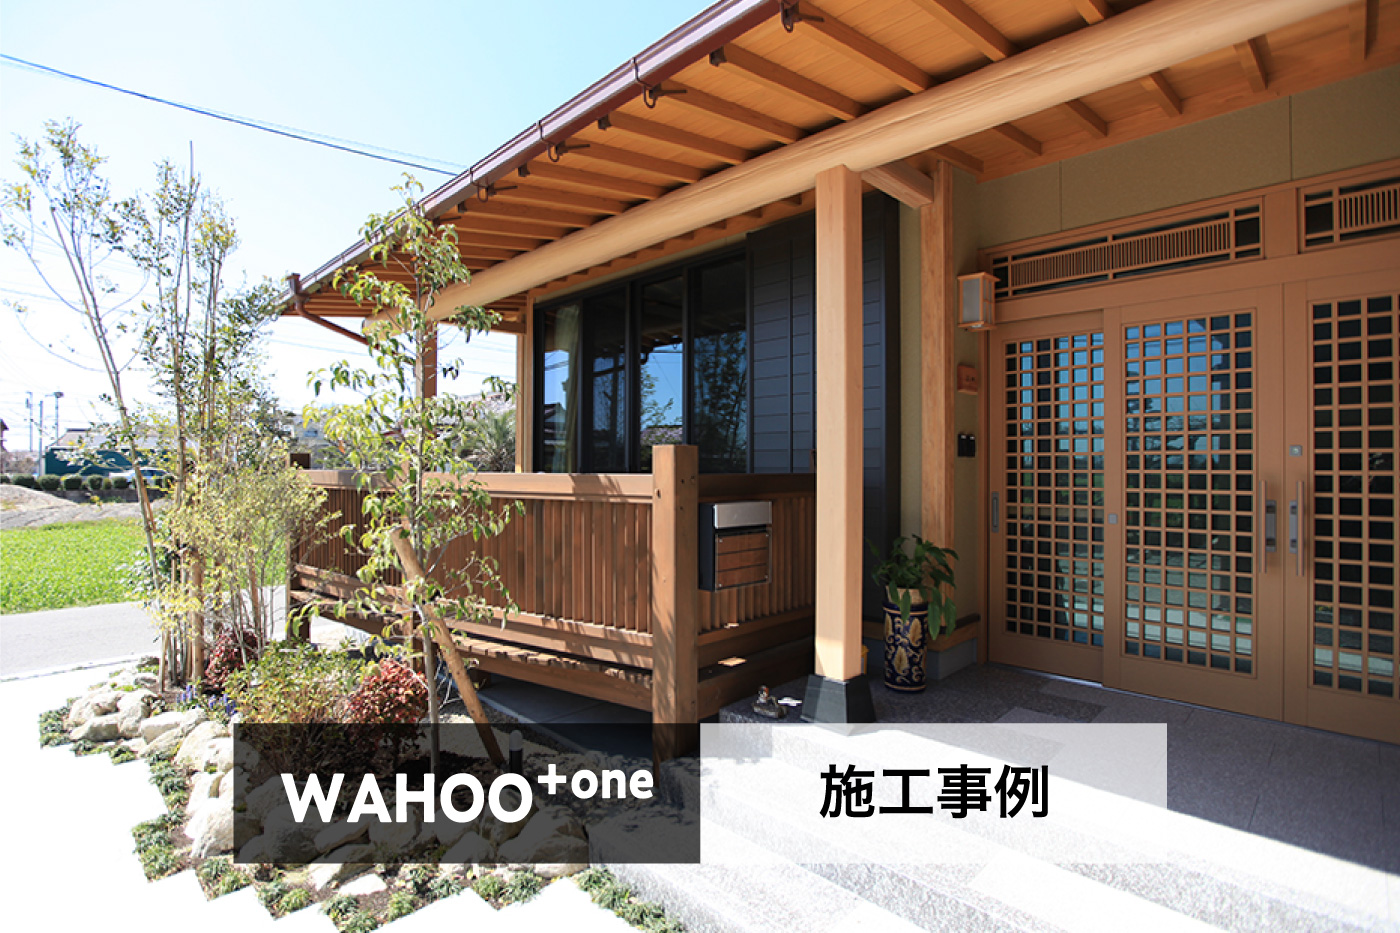 WAHOO+one 施工事例